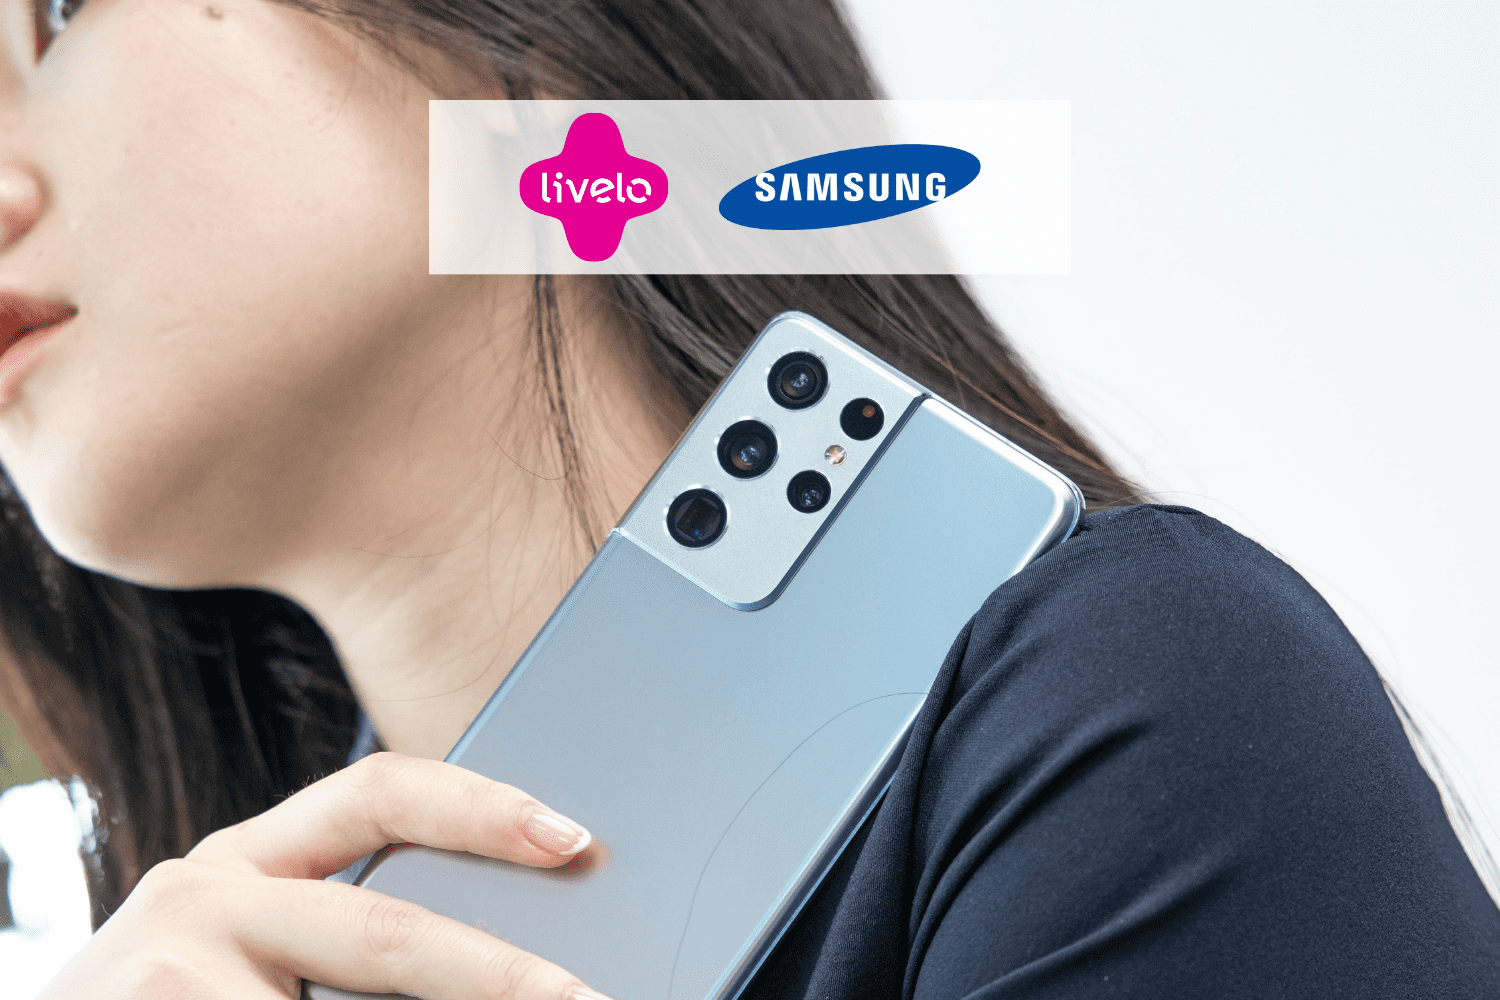 mulher asiática segurando um celular no ombro, com logo Livelo e Samsung 10 pontos Livelo